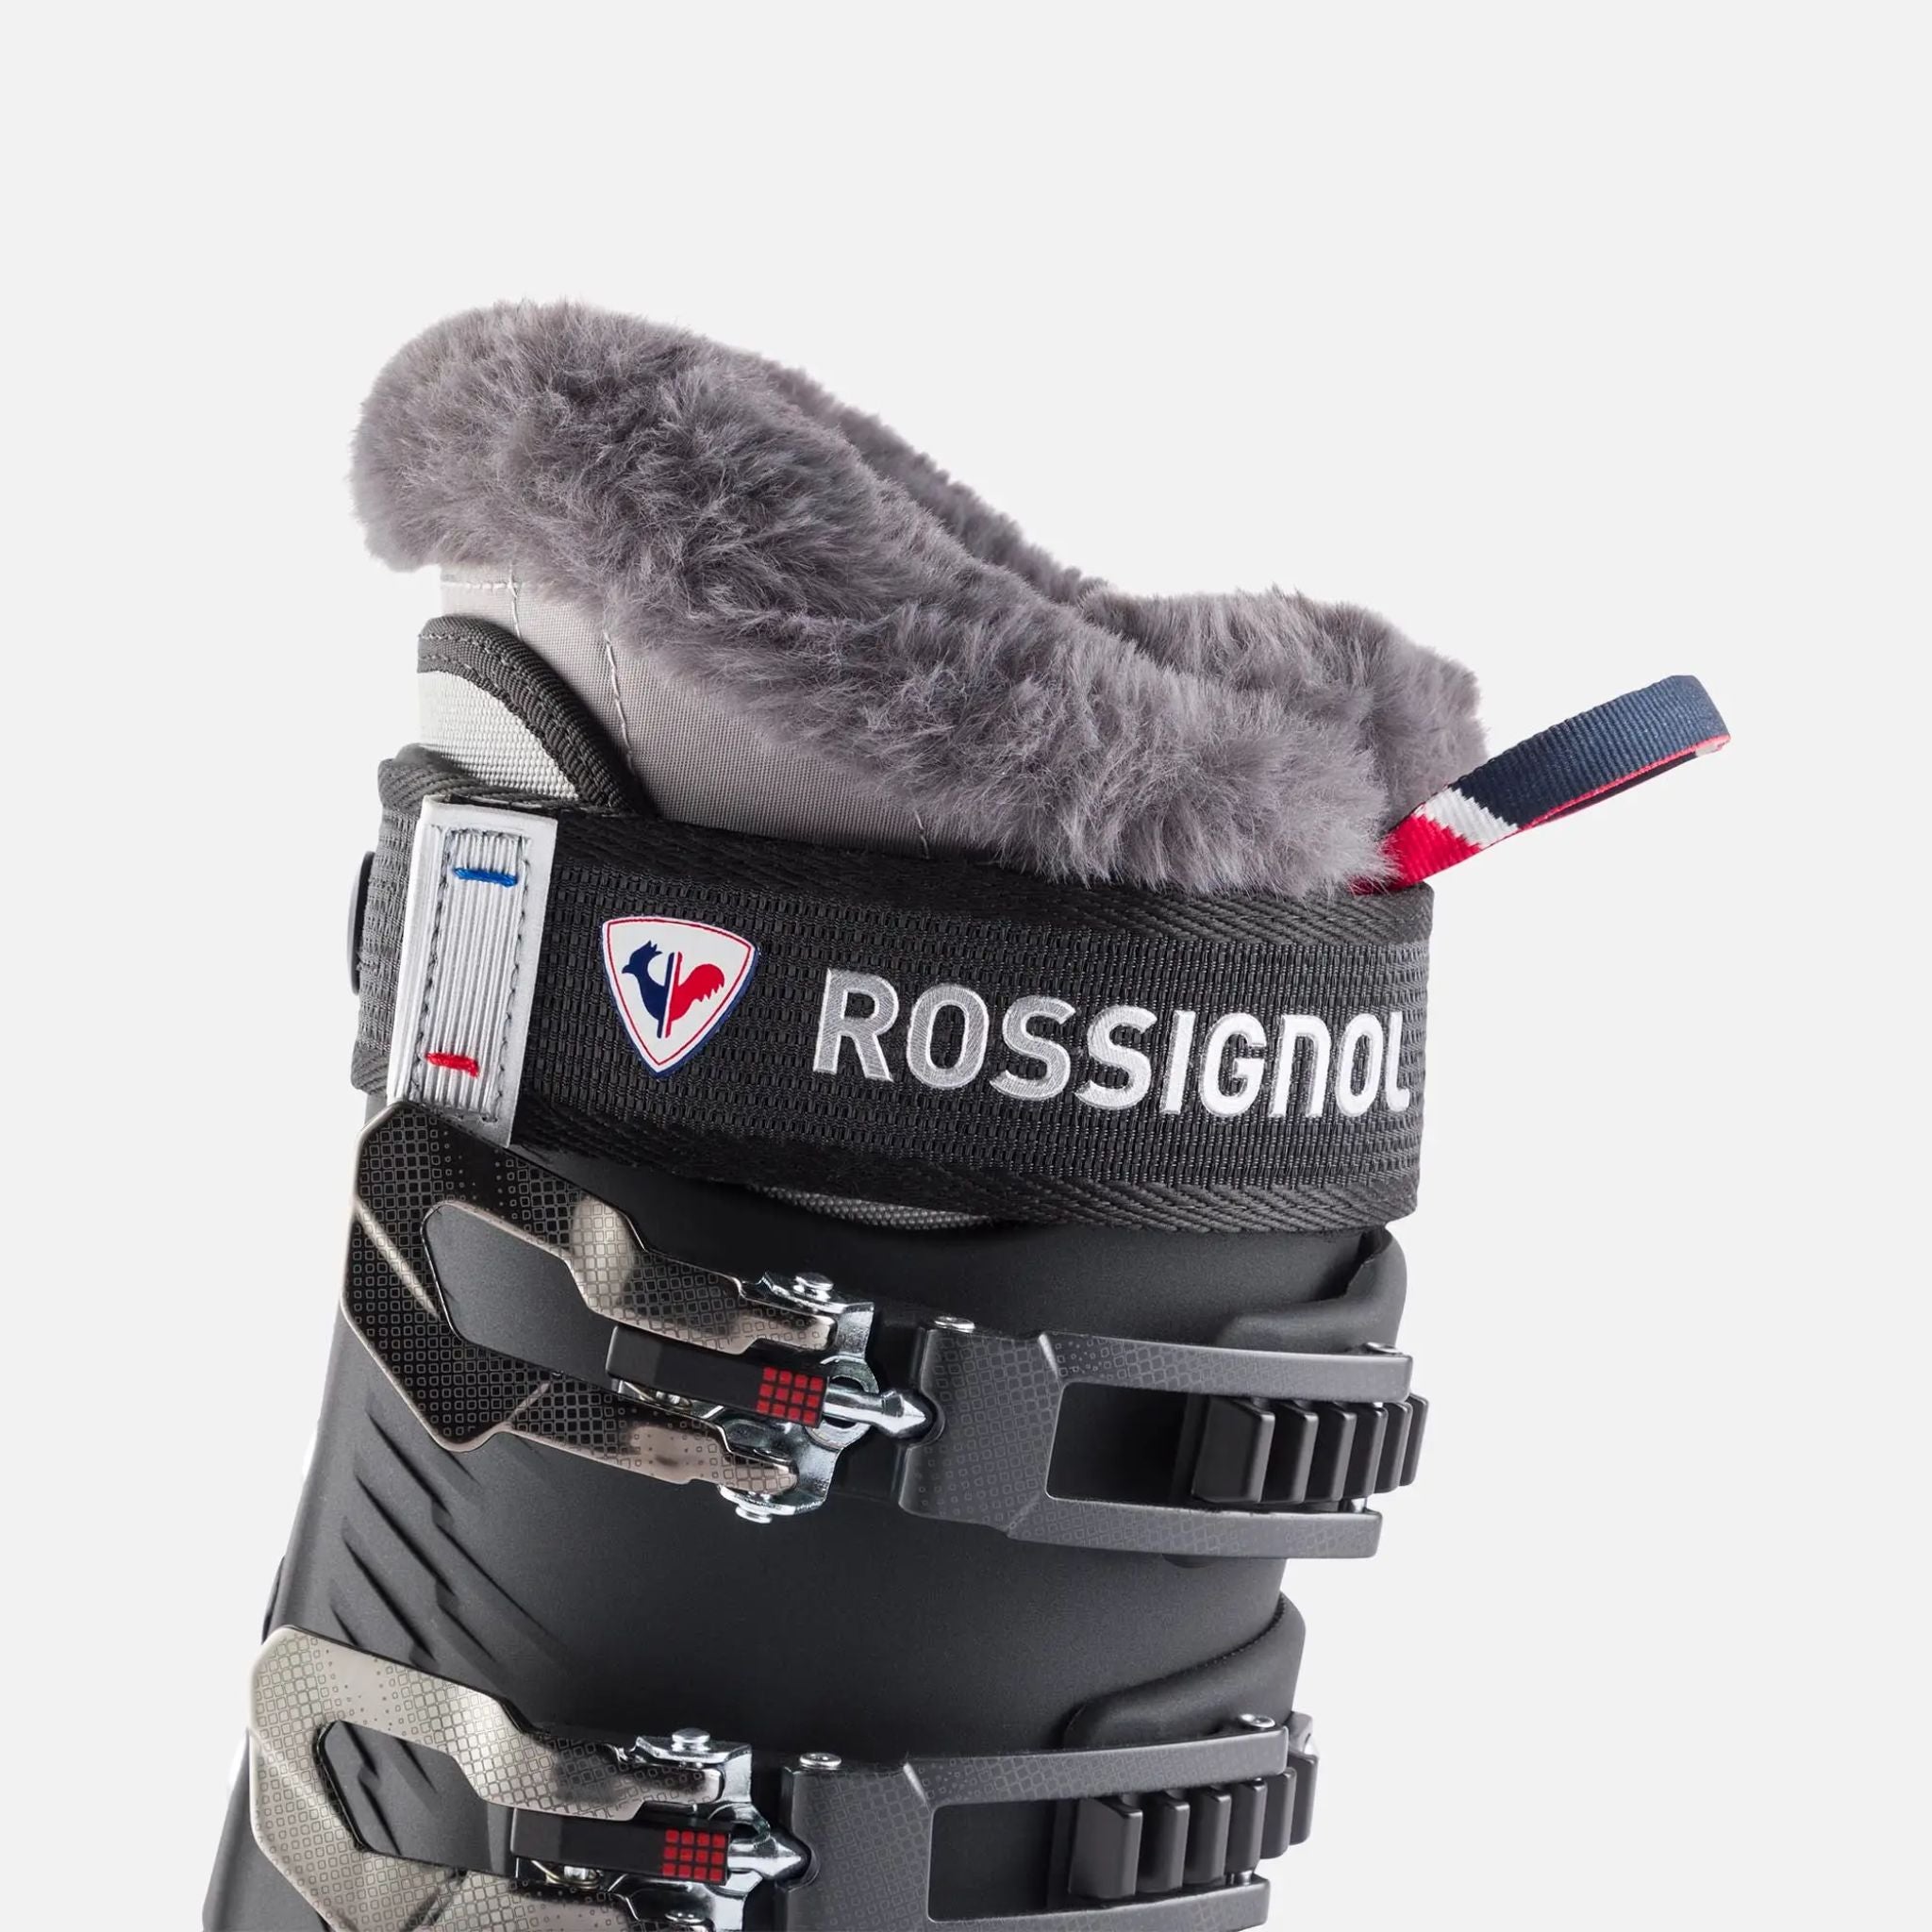 Rossignol Womens Pure Pro 80 Ski Boot